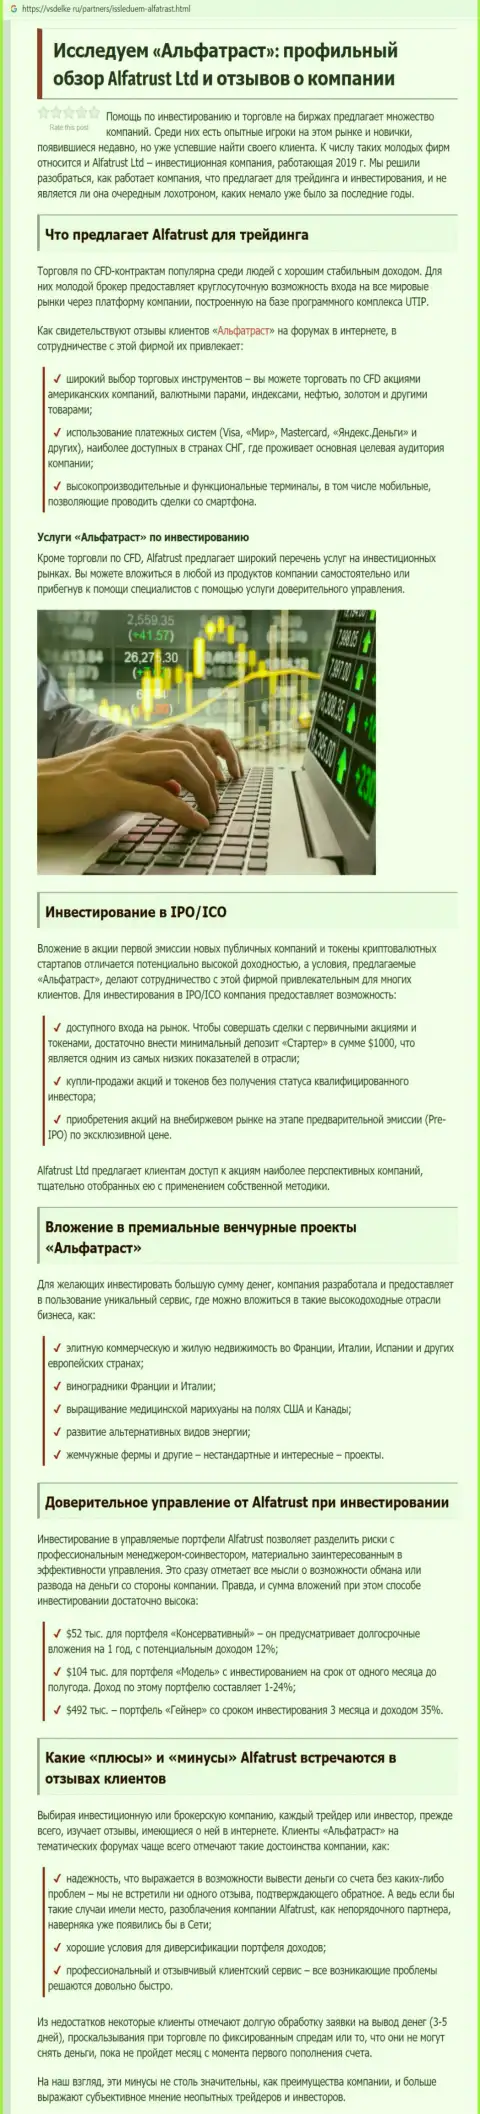 Обзорный материал об forex компании АльфаТраст на web-сервисе всделке ру